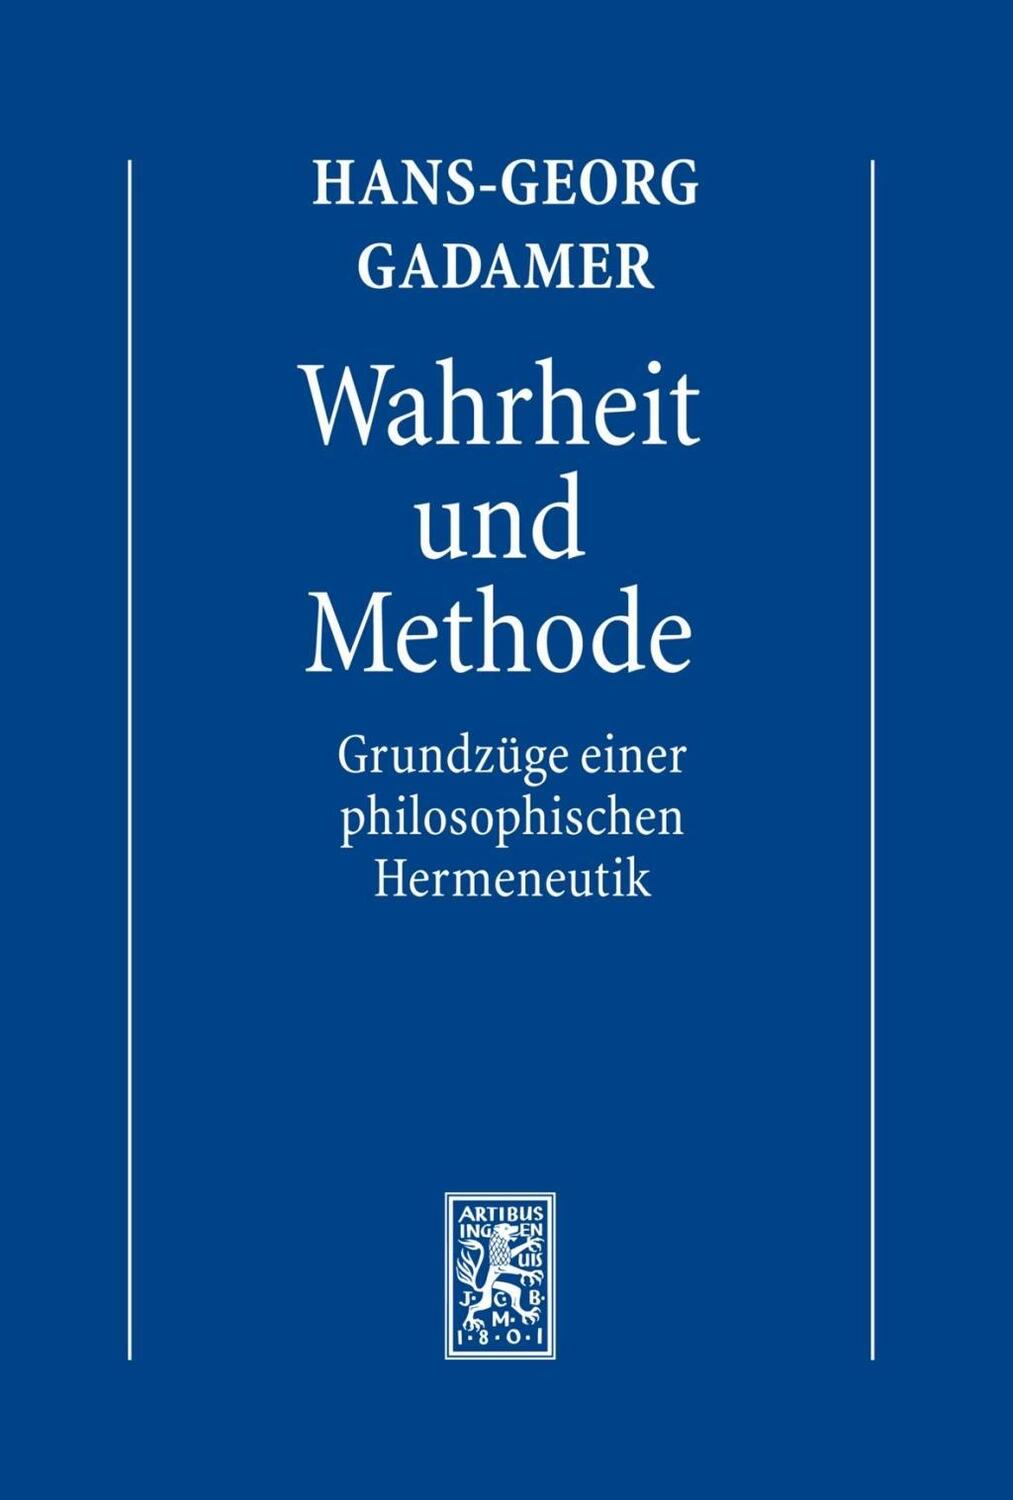 Hermeneutik I. Wahrheit und Methode - Gadamer, Hans-Georg